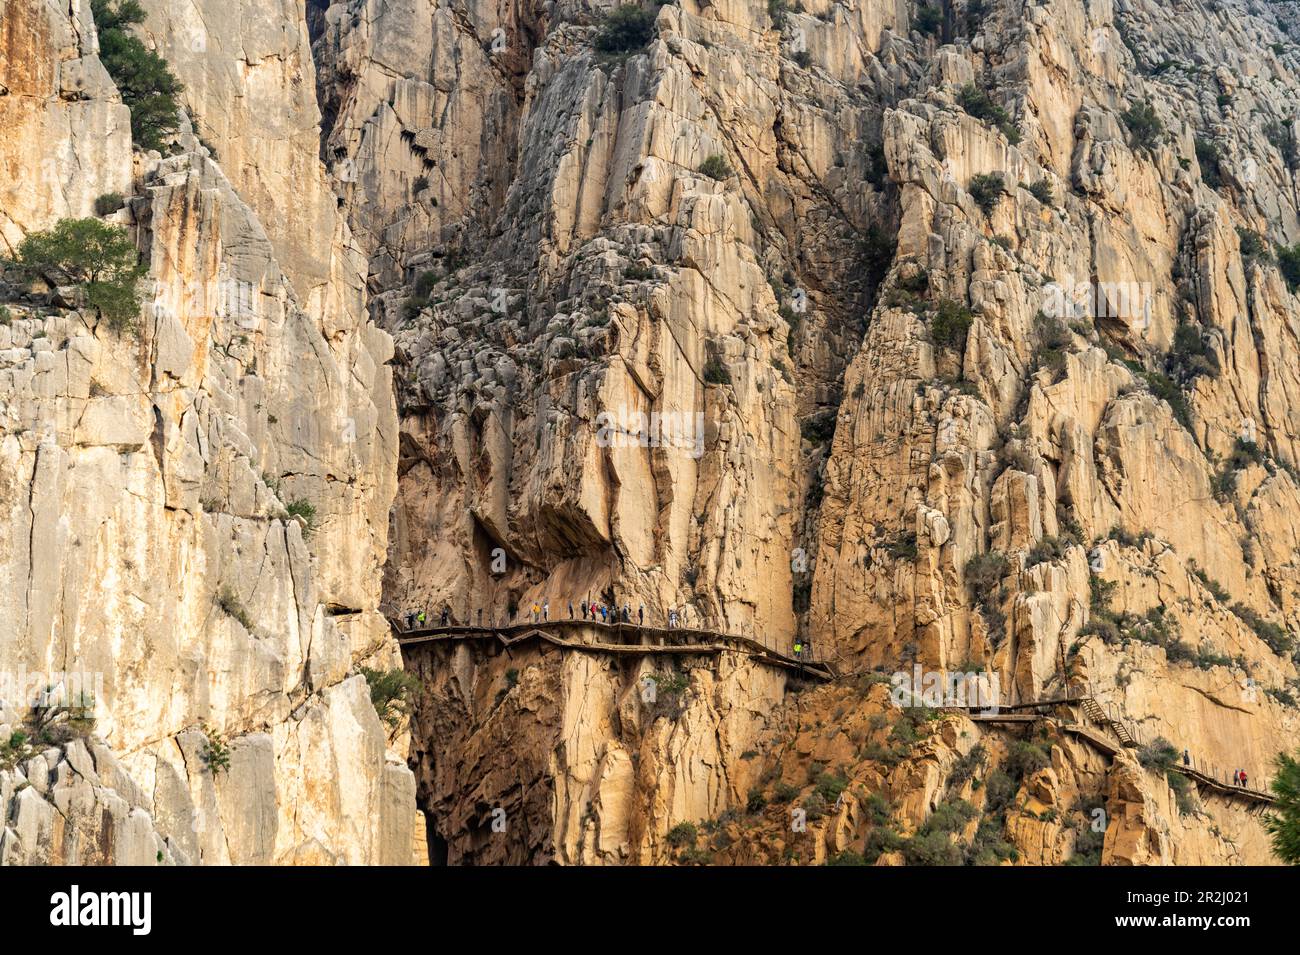 Via ferrata Caminito del Rey hoch in den Felsen von El Chorro, Andalusien, Spanien Stockfoto